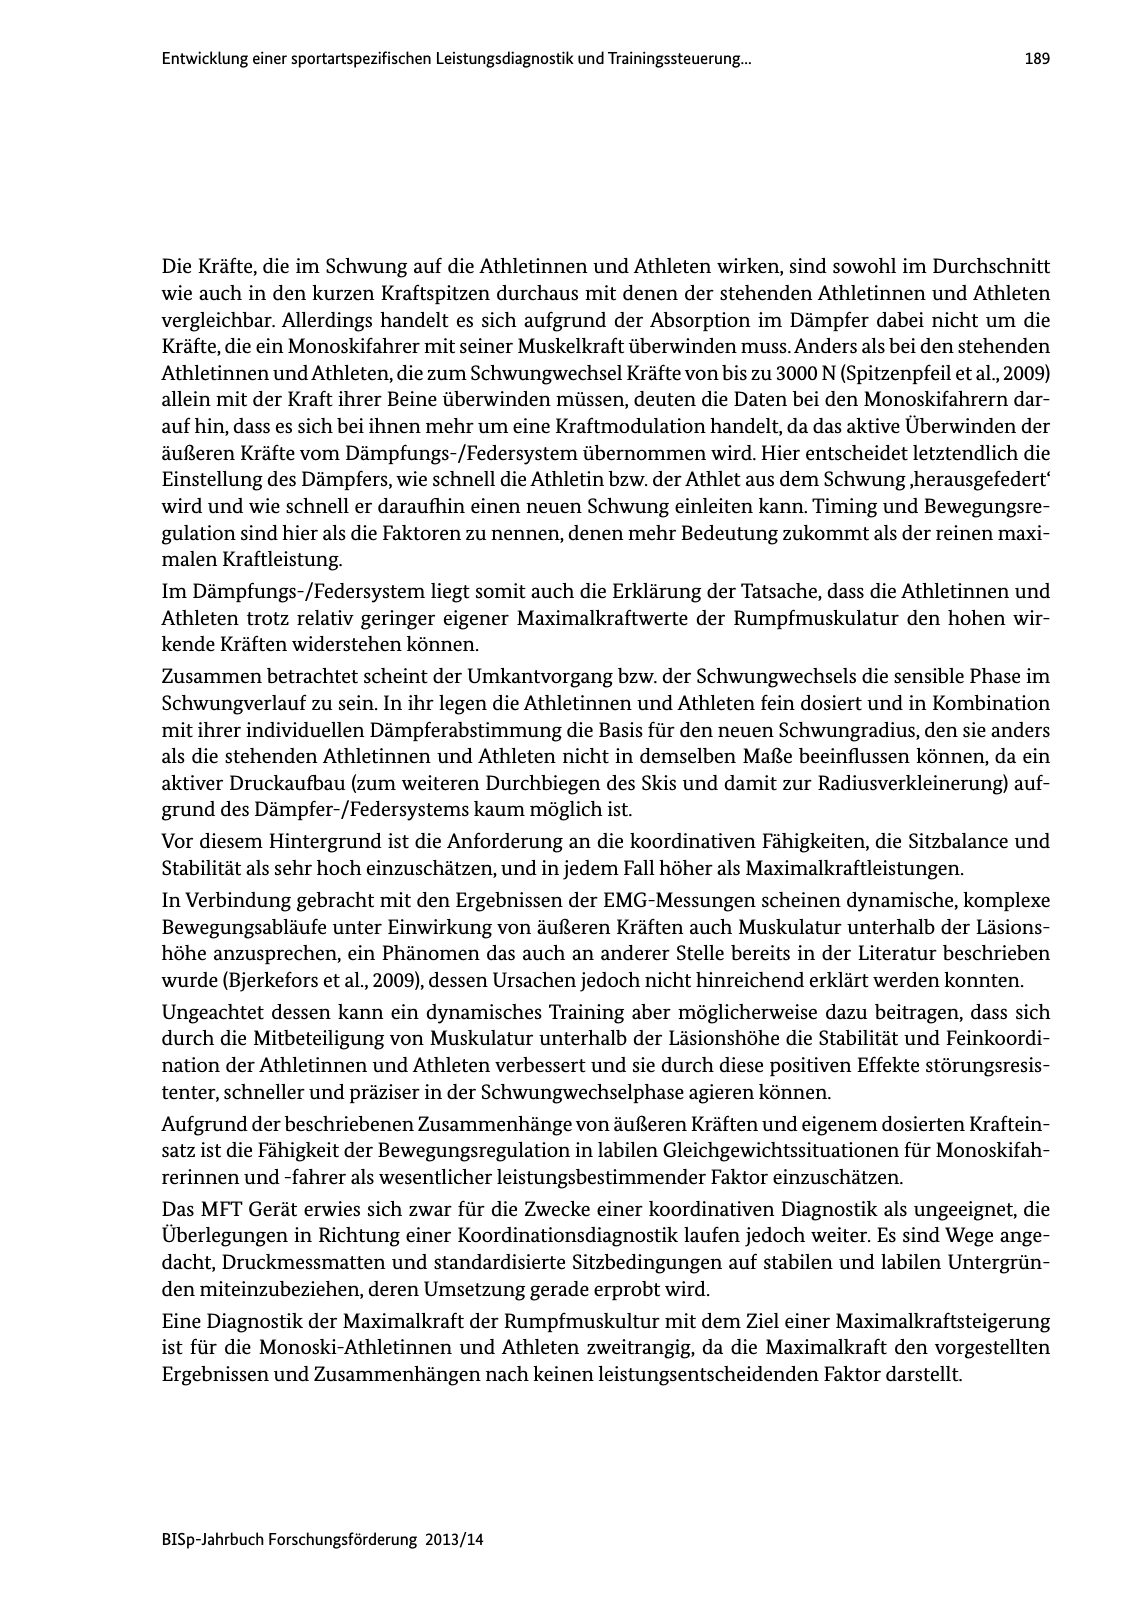 Vorschau BISp-Jahrbuch Forschungsförderung 2013/14 Seite 190